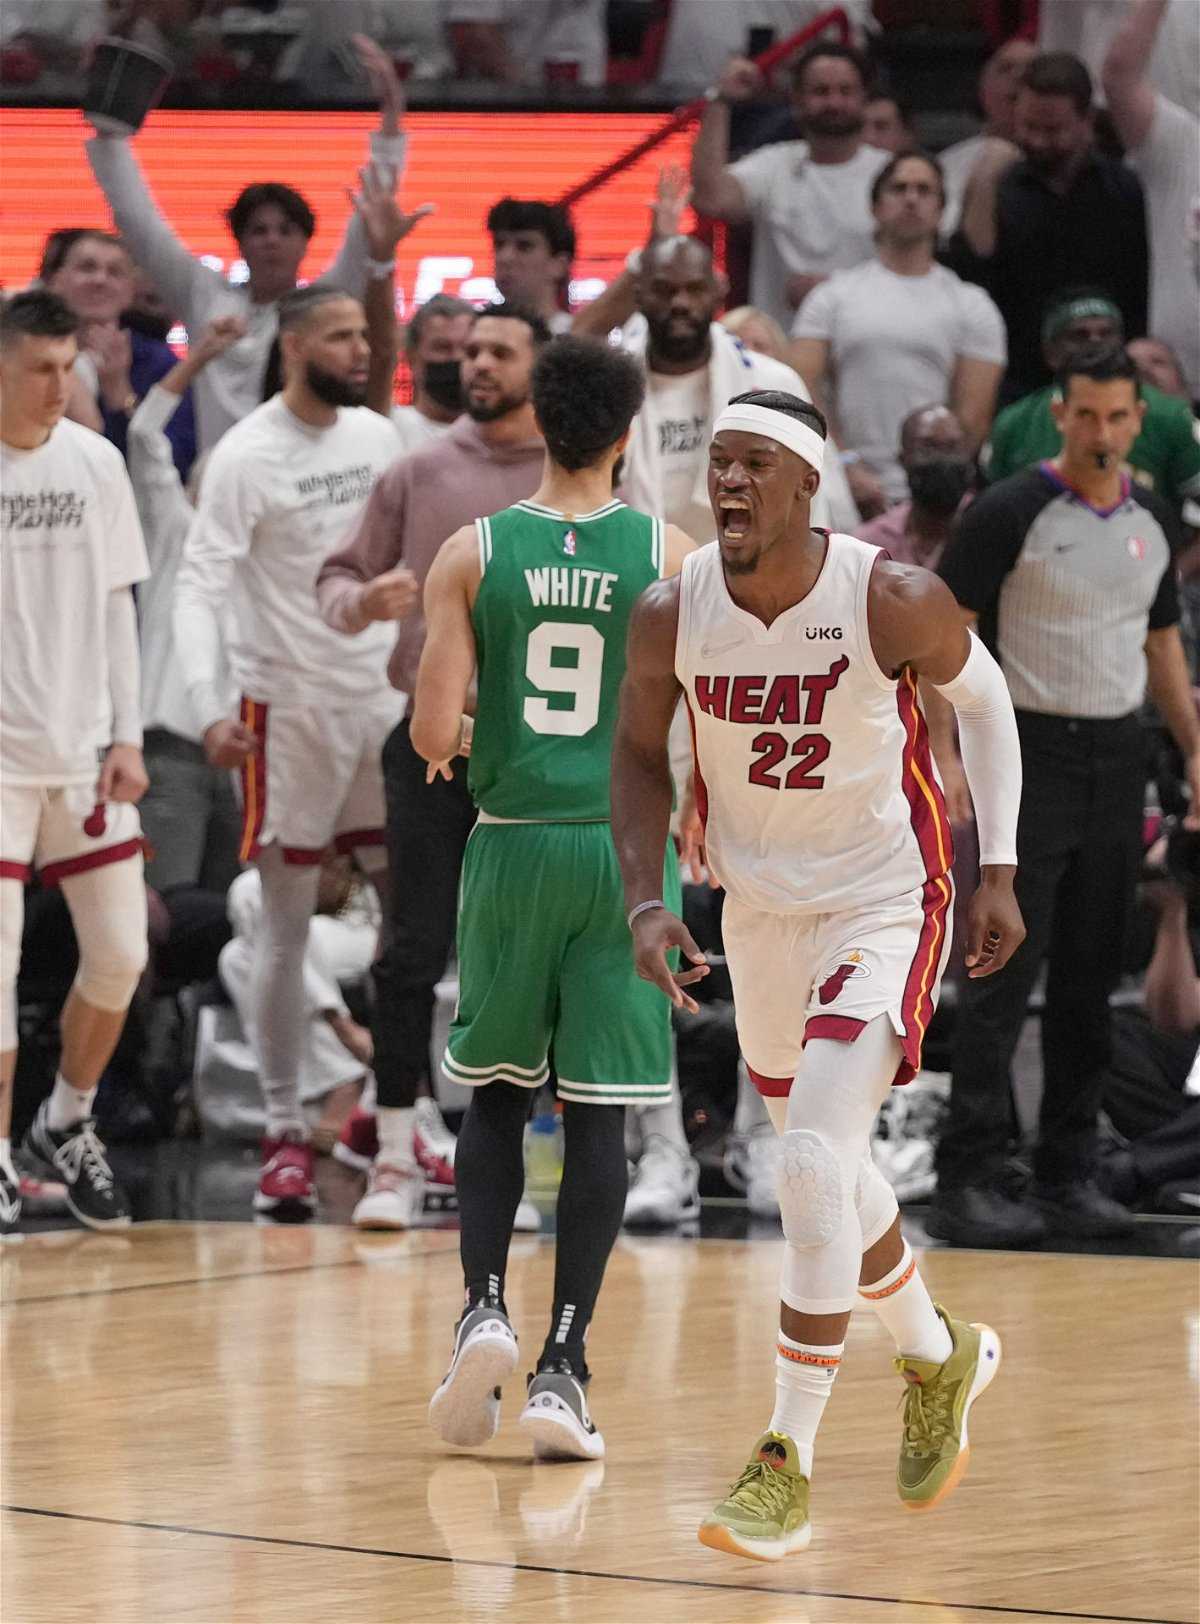 "Miami Are Done": Heartbreak pour les fans de Heat alors que Jimmy Butler est mis à l'écart en milieu de match avec une blessure au genou contre les Celtics de Jayson Tatum